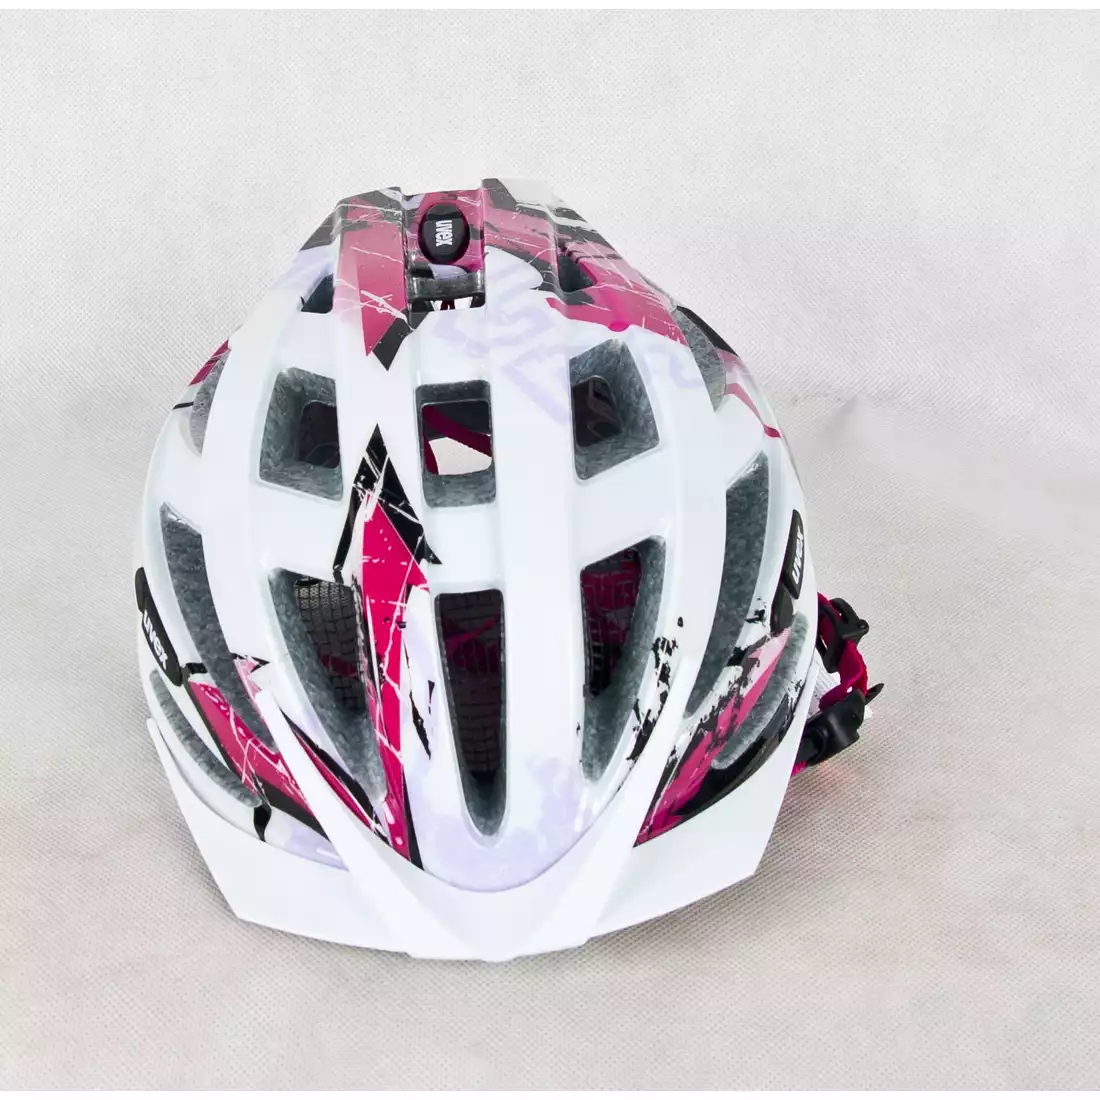 UVEX kask rowerowy  AIR WING, biało-różowy